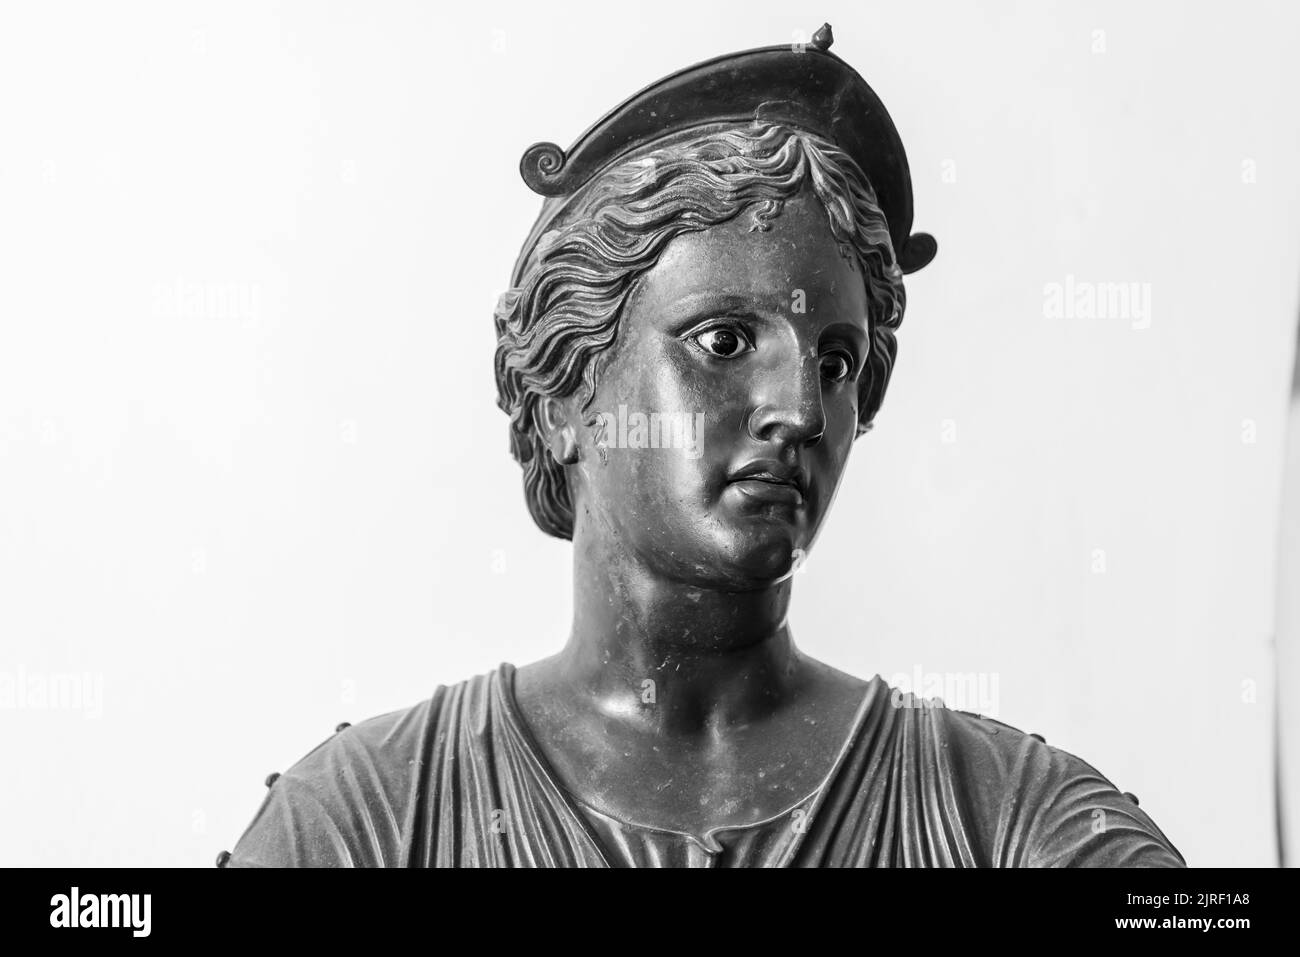 Schwarz-Weiß-Foto, das in Nahaufnahme das Gesicht einer alten Metallstatue zeigt, die eine junge römerin mit einem Hut darstellt Stockfoto